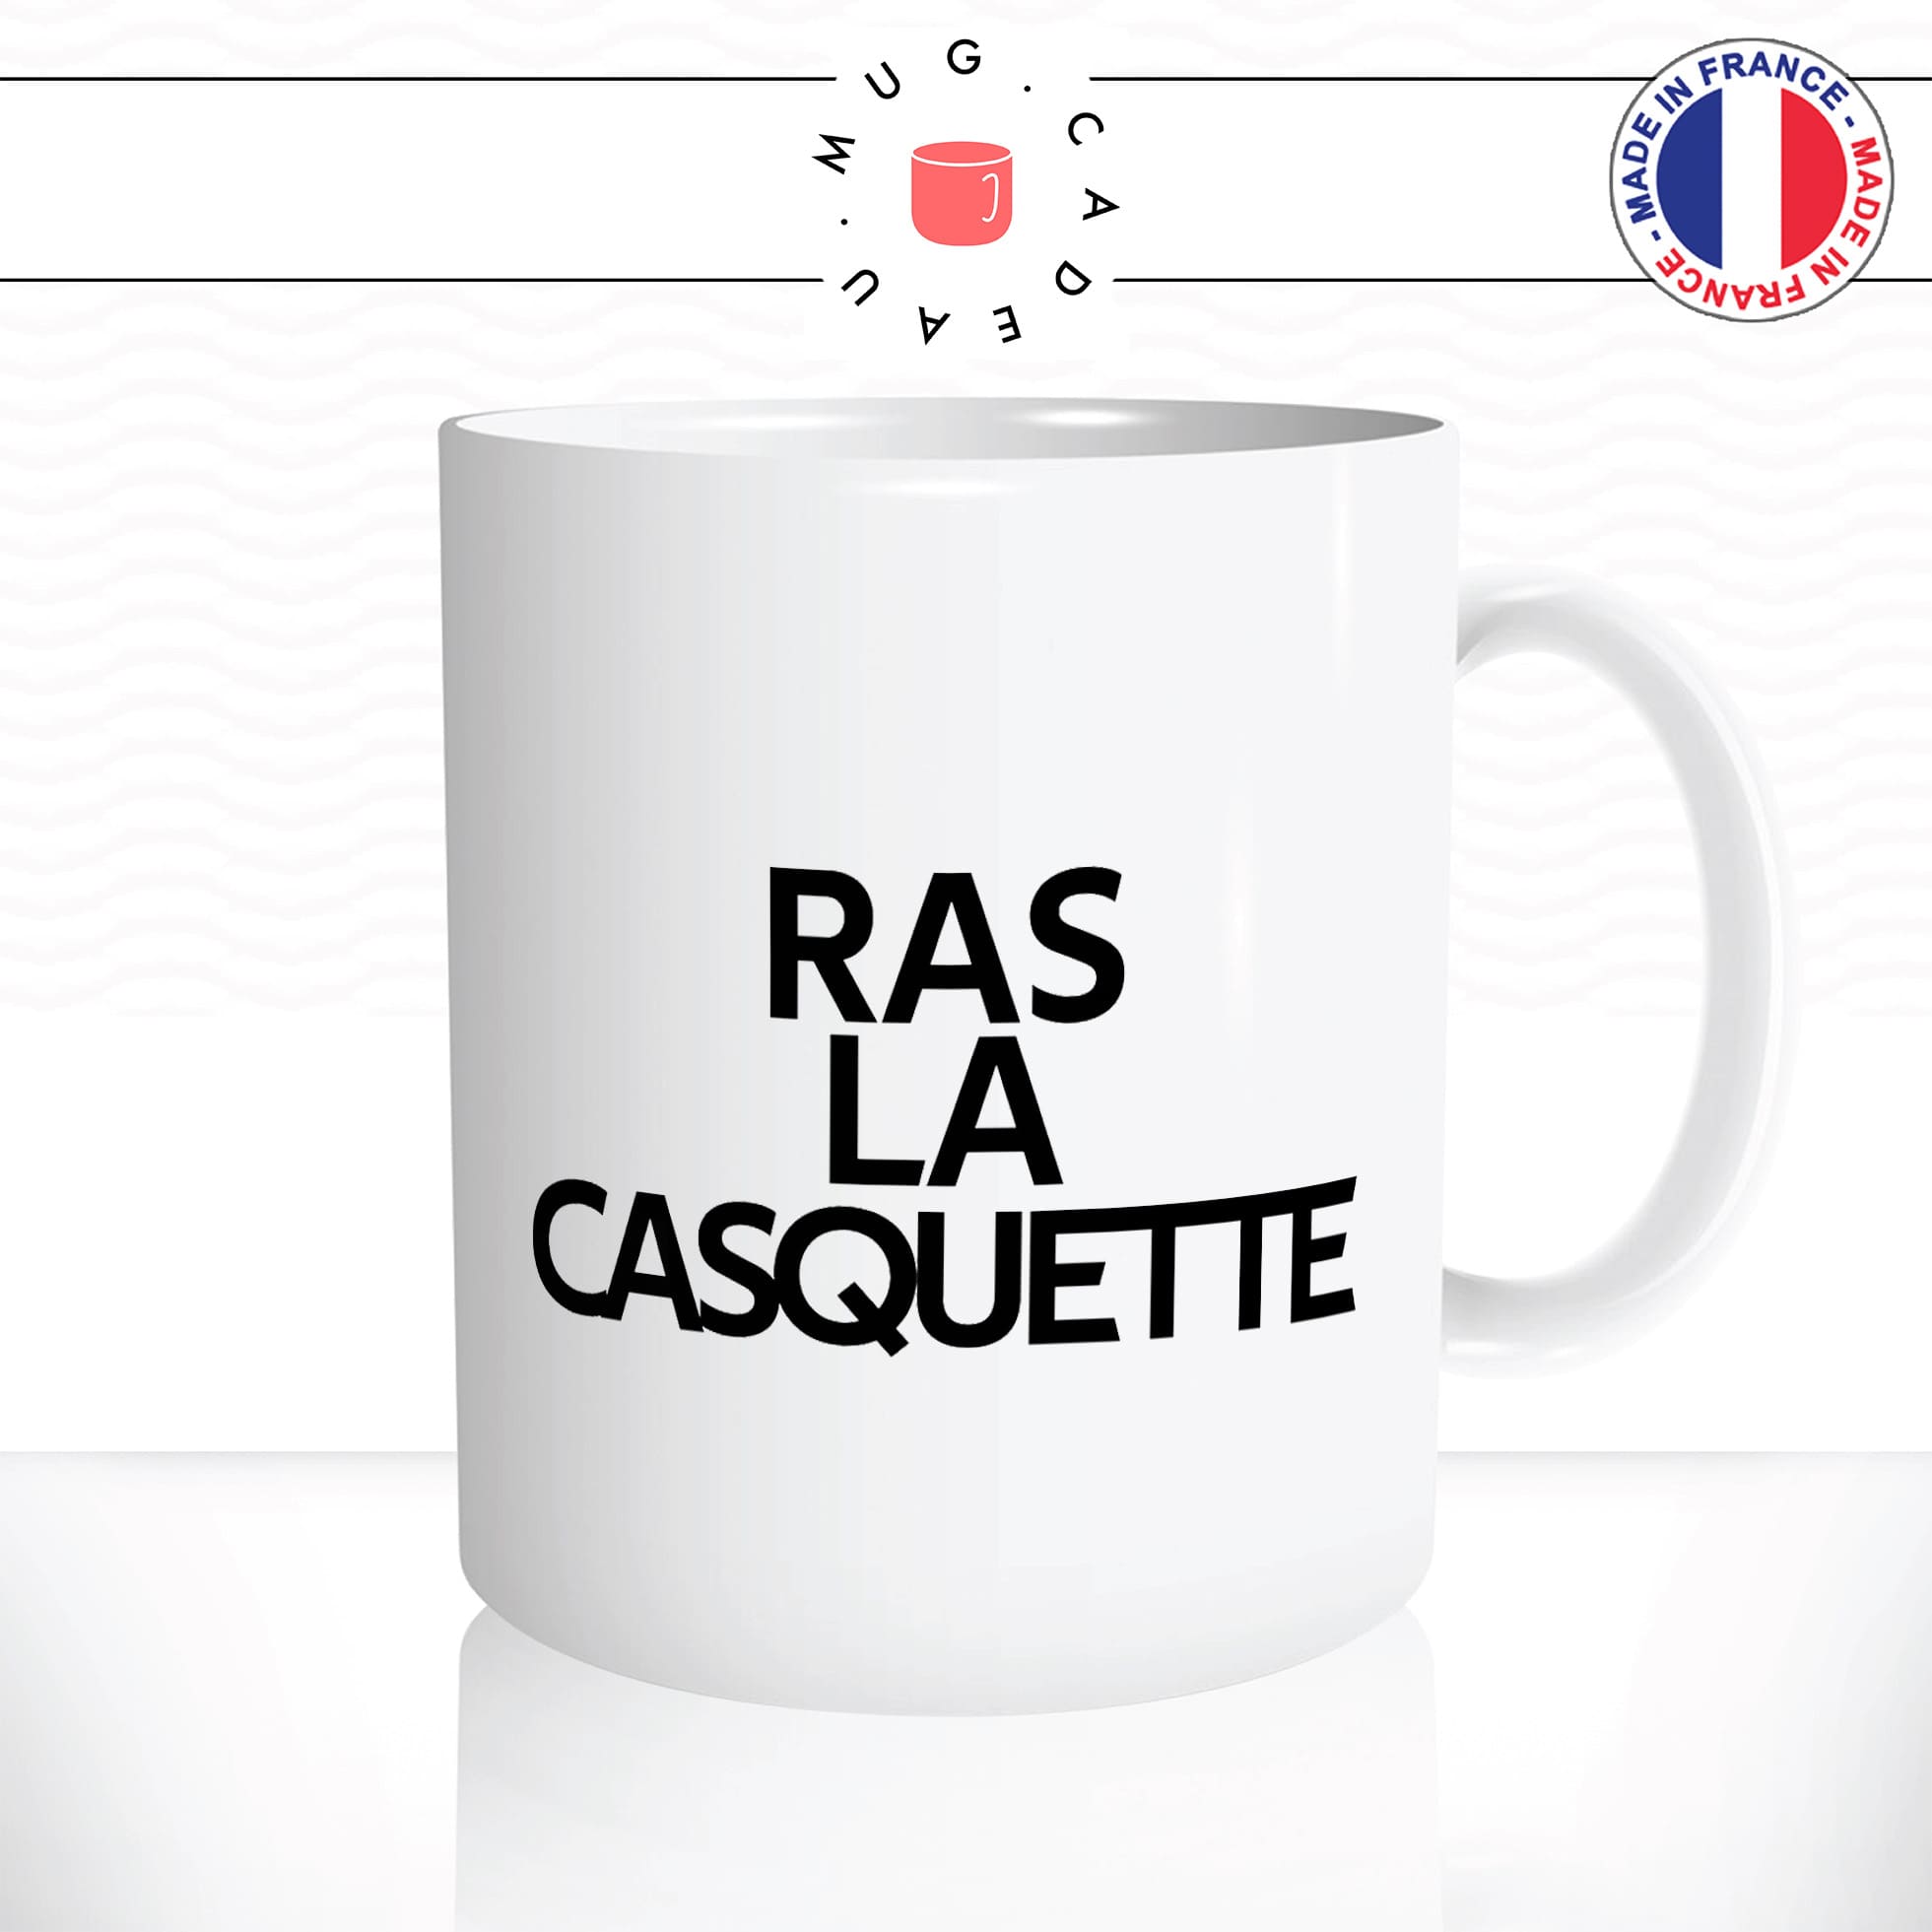 mug-tasse-blanc-ras-la-casquette-expression-francaise-jen-ai-marre-humour-fun-idée-cadeau-originale-cool2